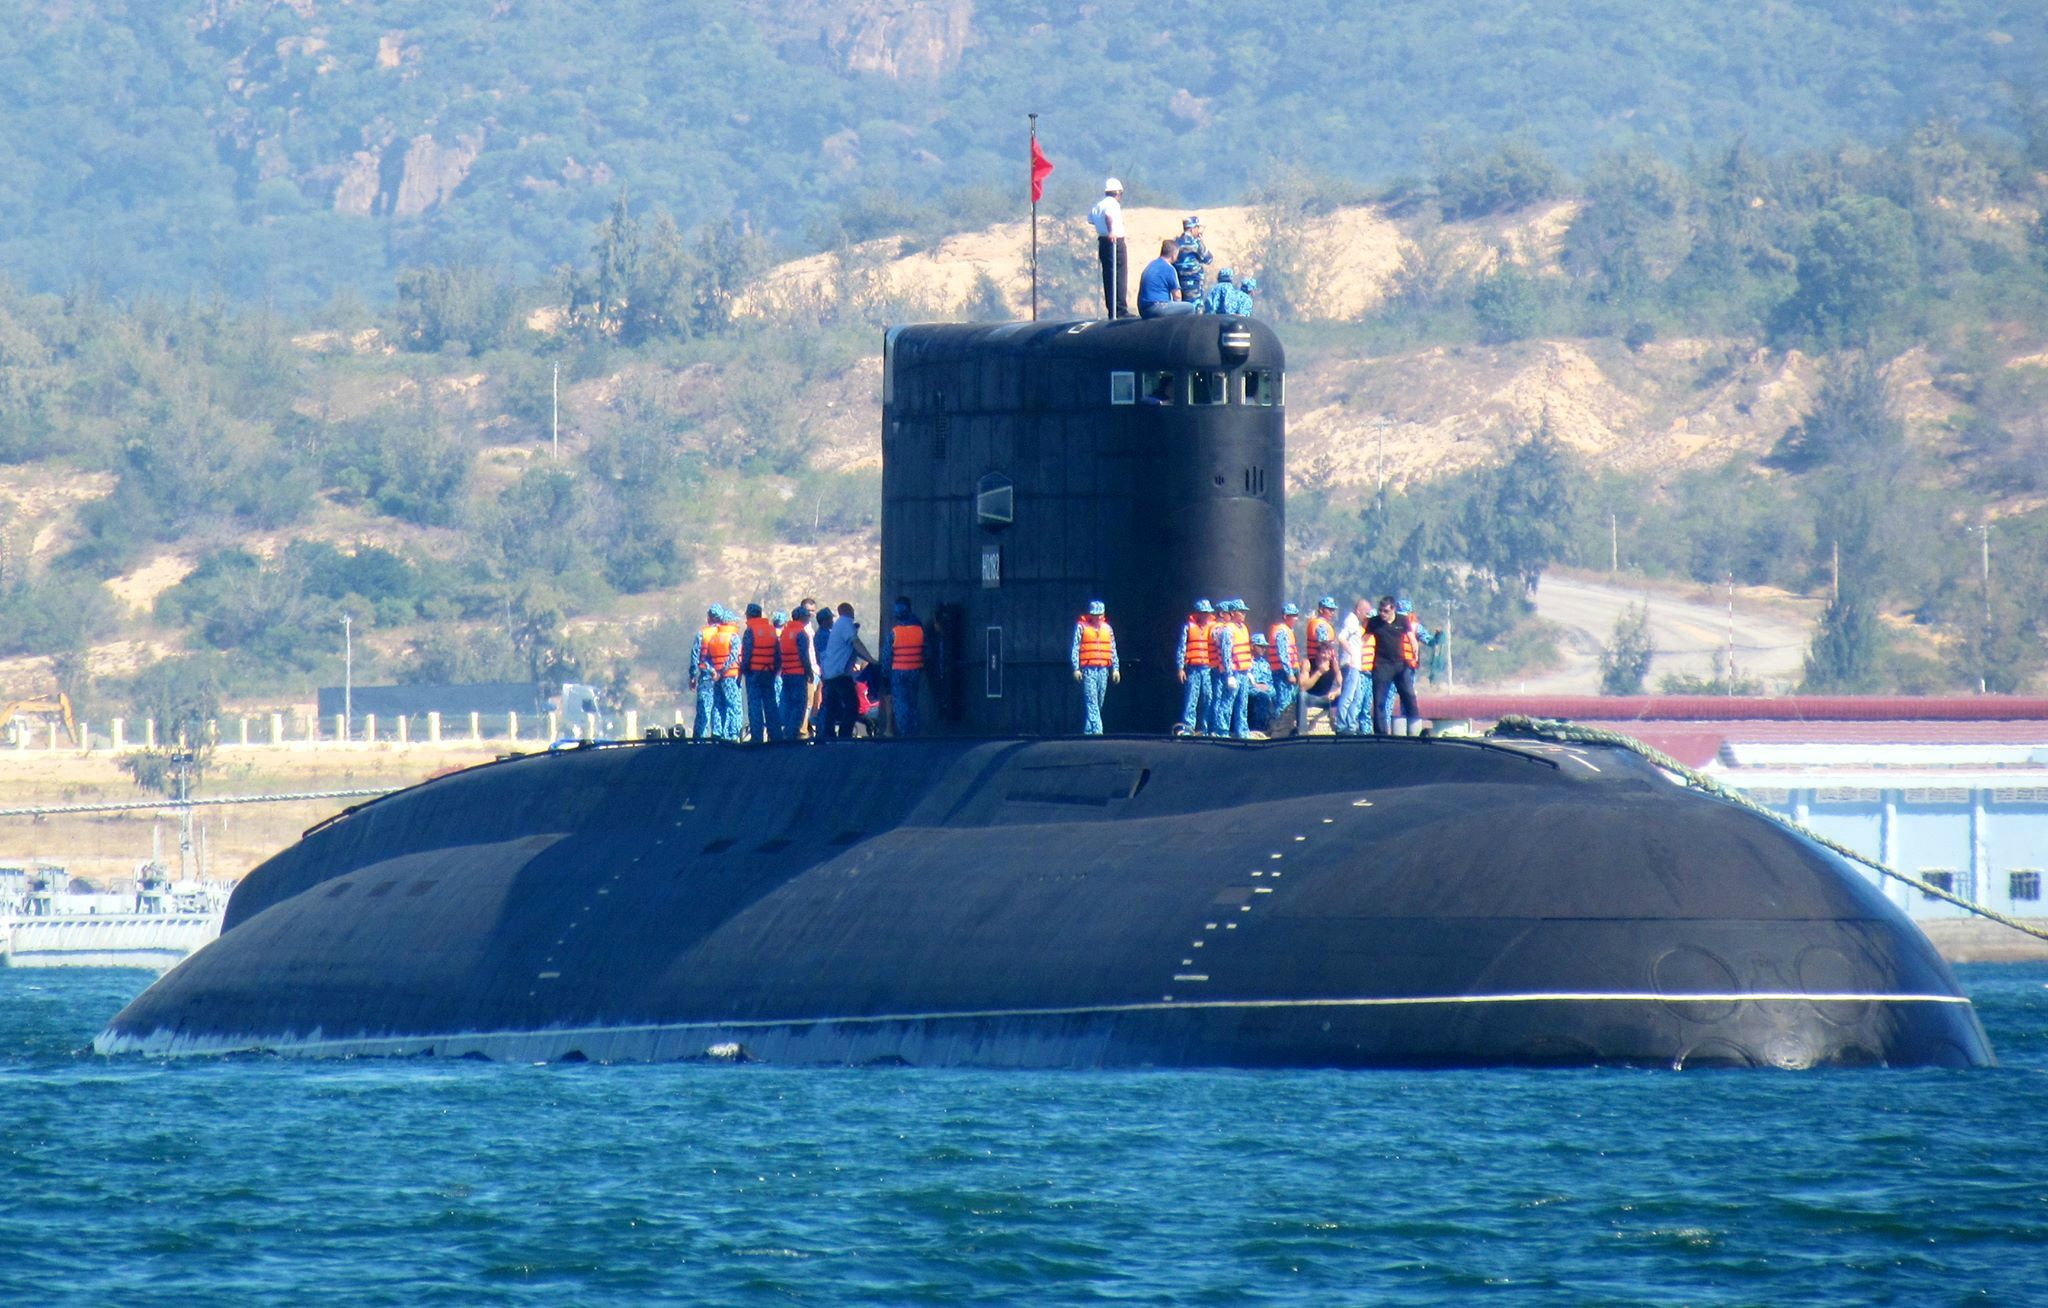 俄罗斯与越南举行潜艇救援演习 俄出动救援深潜器